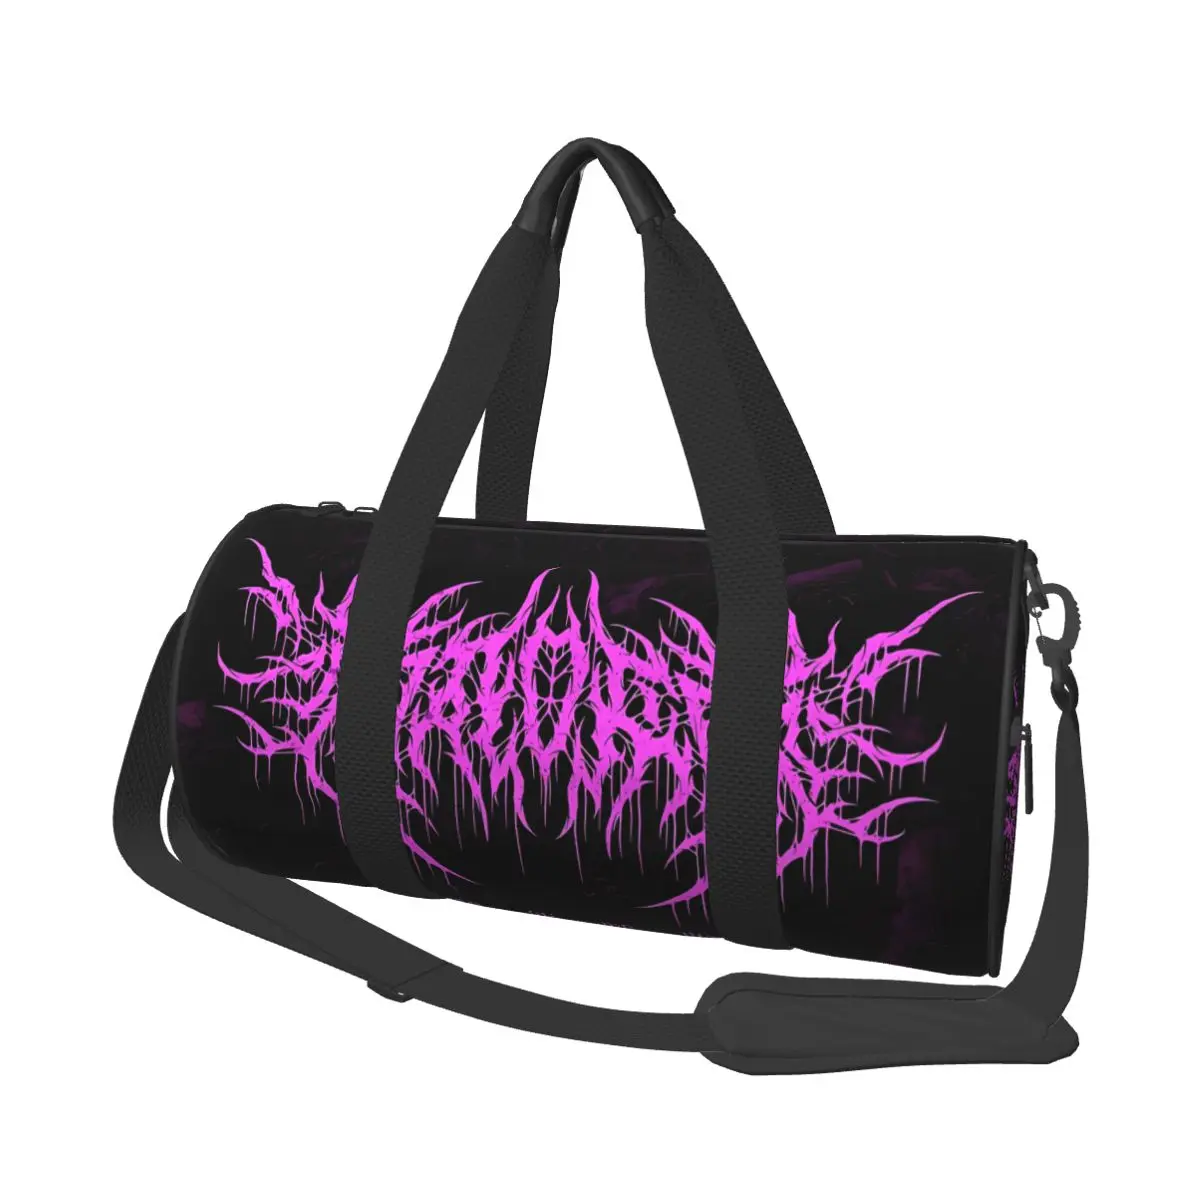 

Goth спортивная сумка с логотипом гаджер Deathcores, рок-Оксфордские спортивные сумки, аксессуары для спортзала, чемодан с принтом, сумка для фитнеса с графическим рисунком для пары